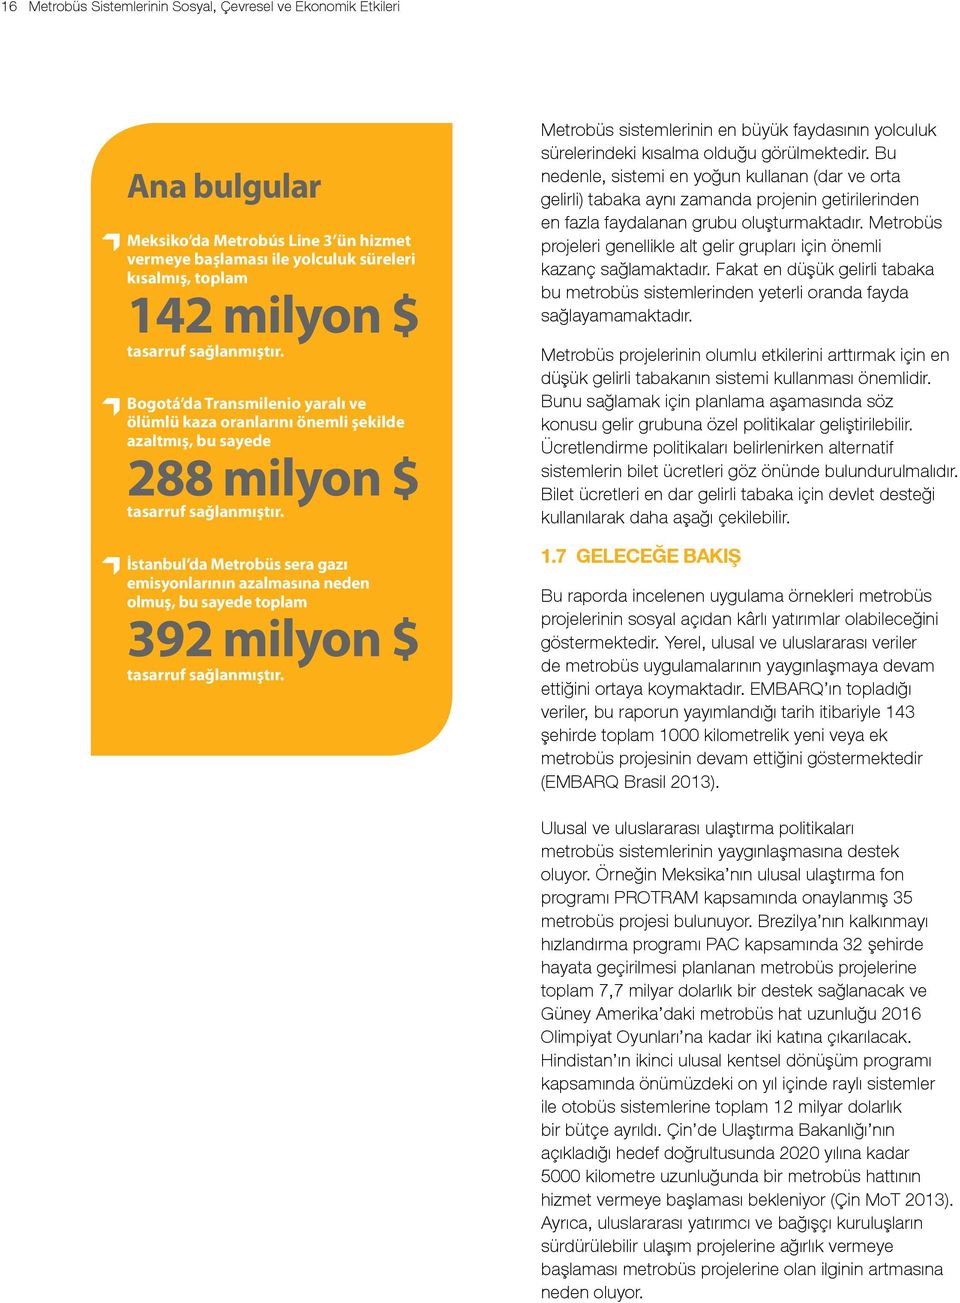 İstanbul da Metrobüs sera gazı emisyonlarının azalmasına neden olmuş, bu sayede toplam 392 milyon $ tasarruf sağlanmıştır.